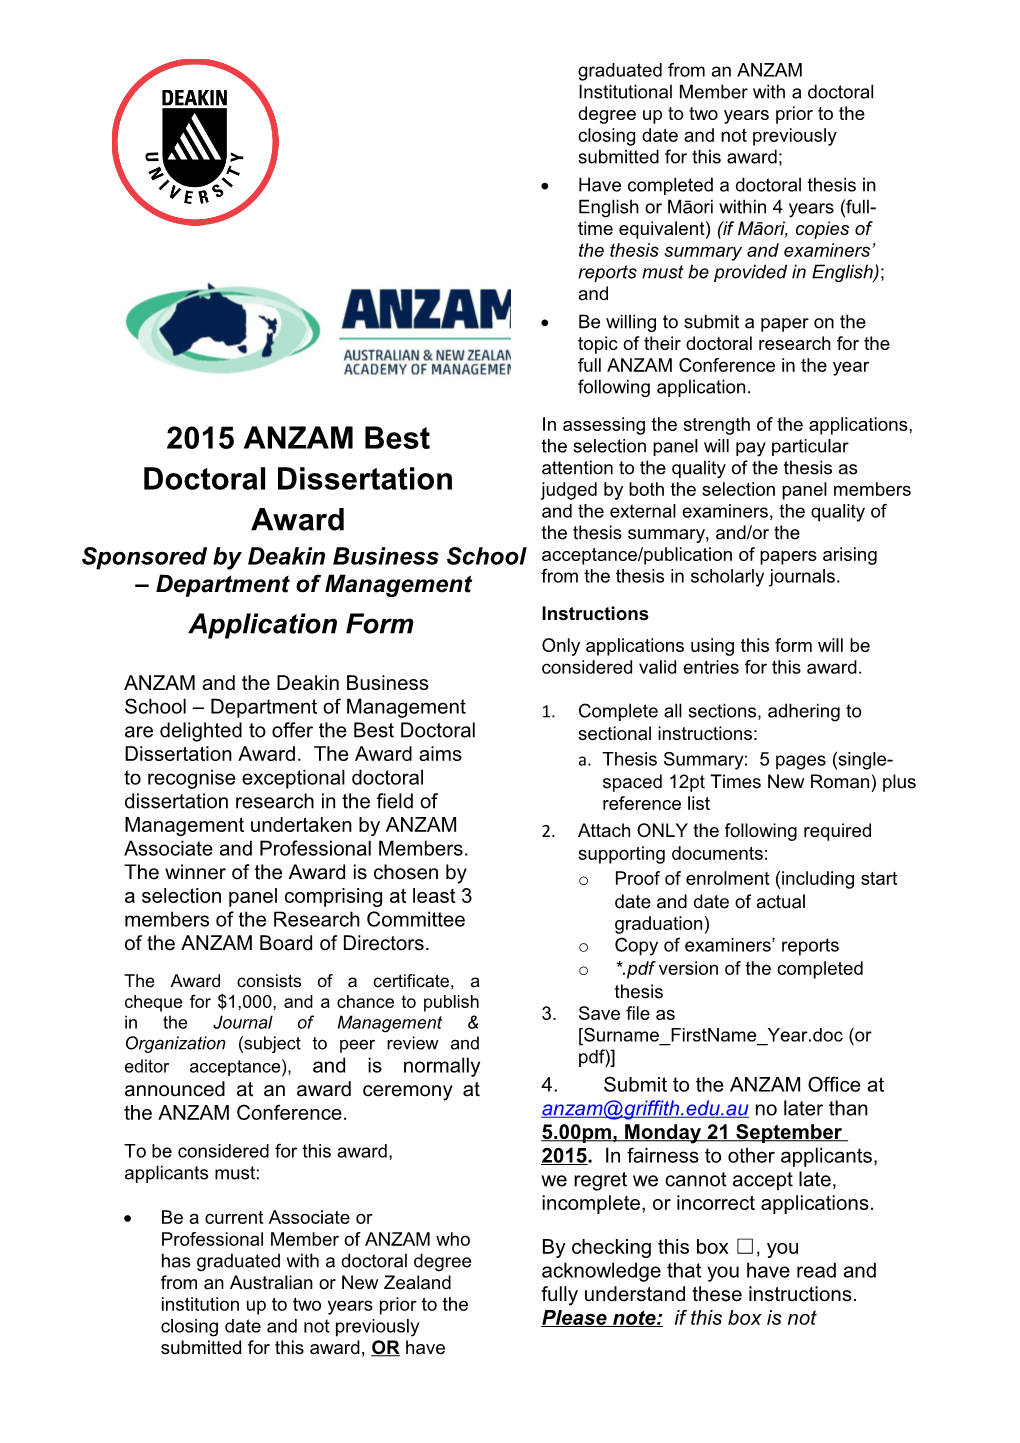 2015 ANZAM Best Doctoral Dissertation Award